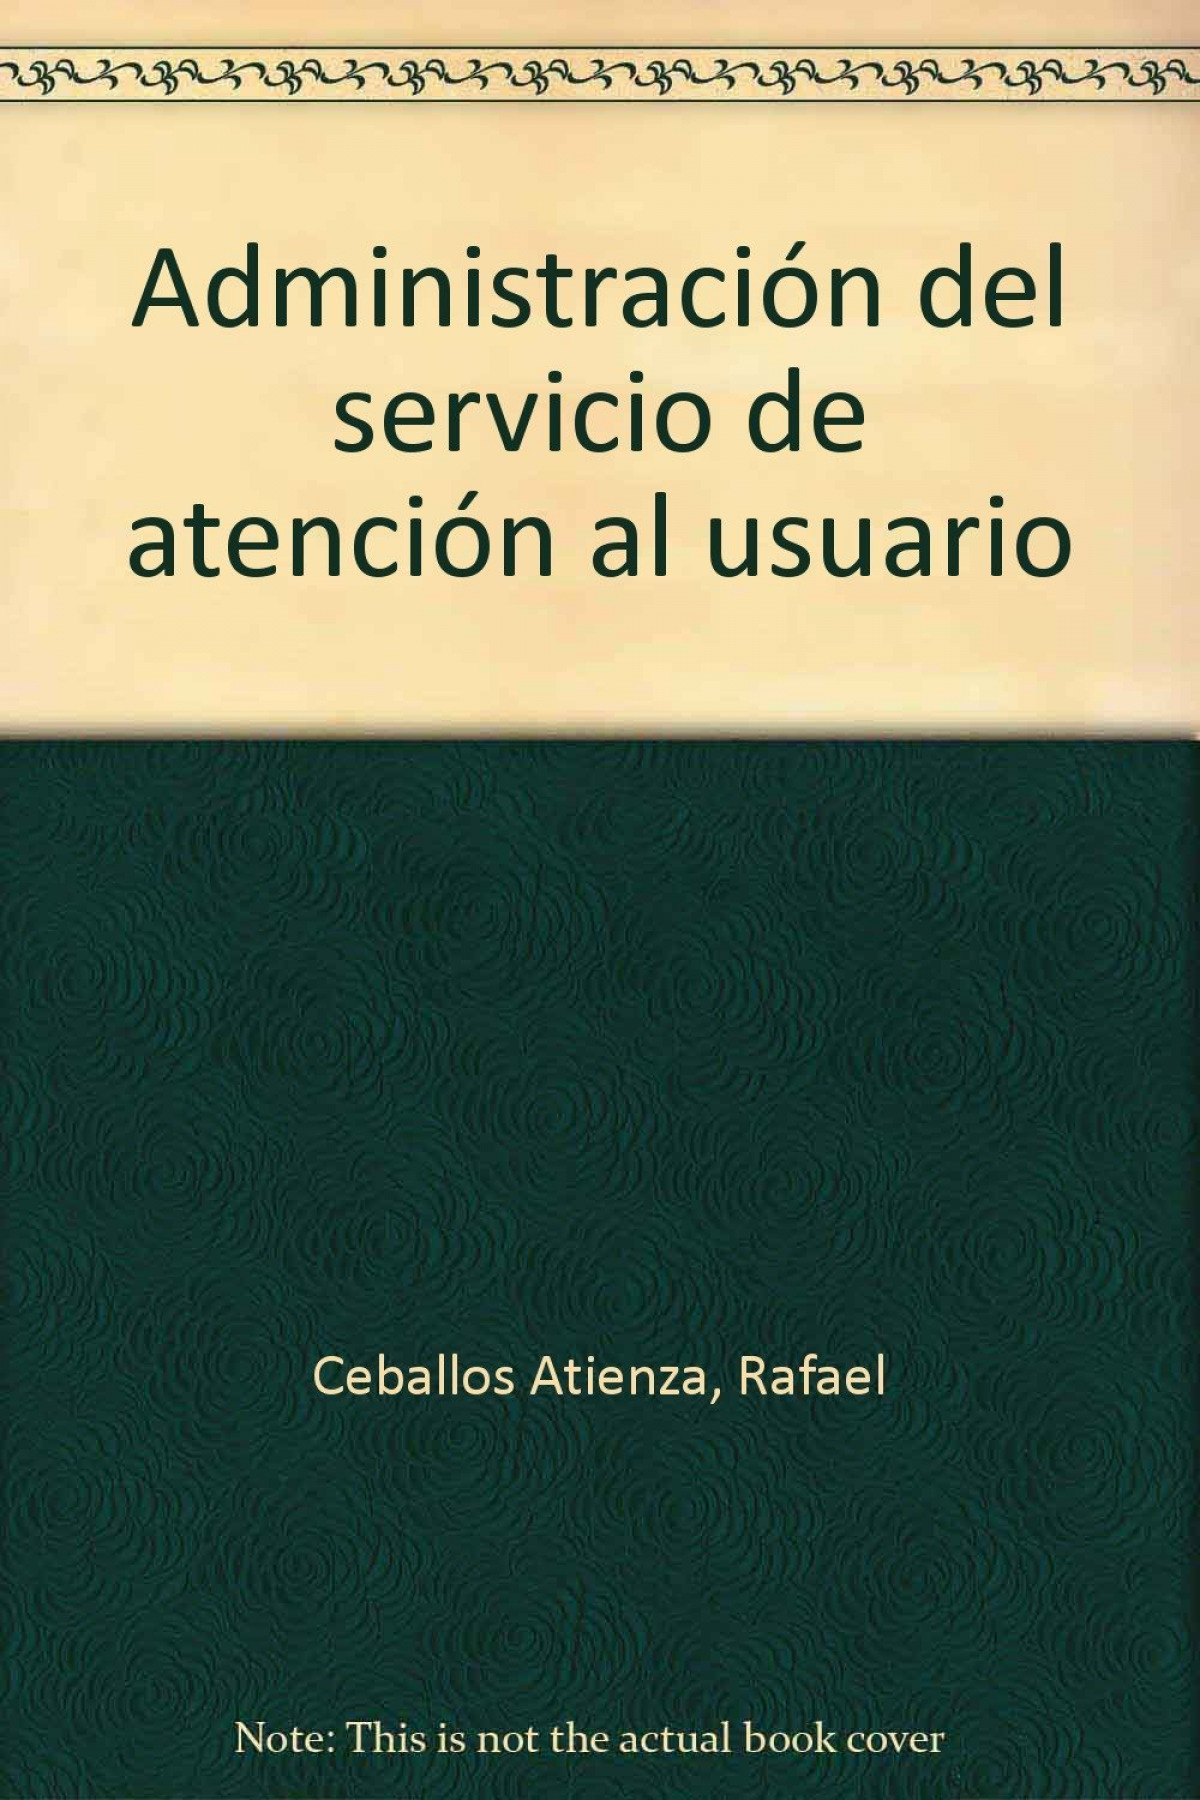 Administracion del servicio de atencion al usuari - Rafael Ceballos Atienza